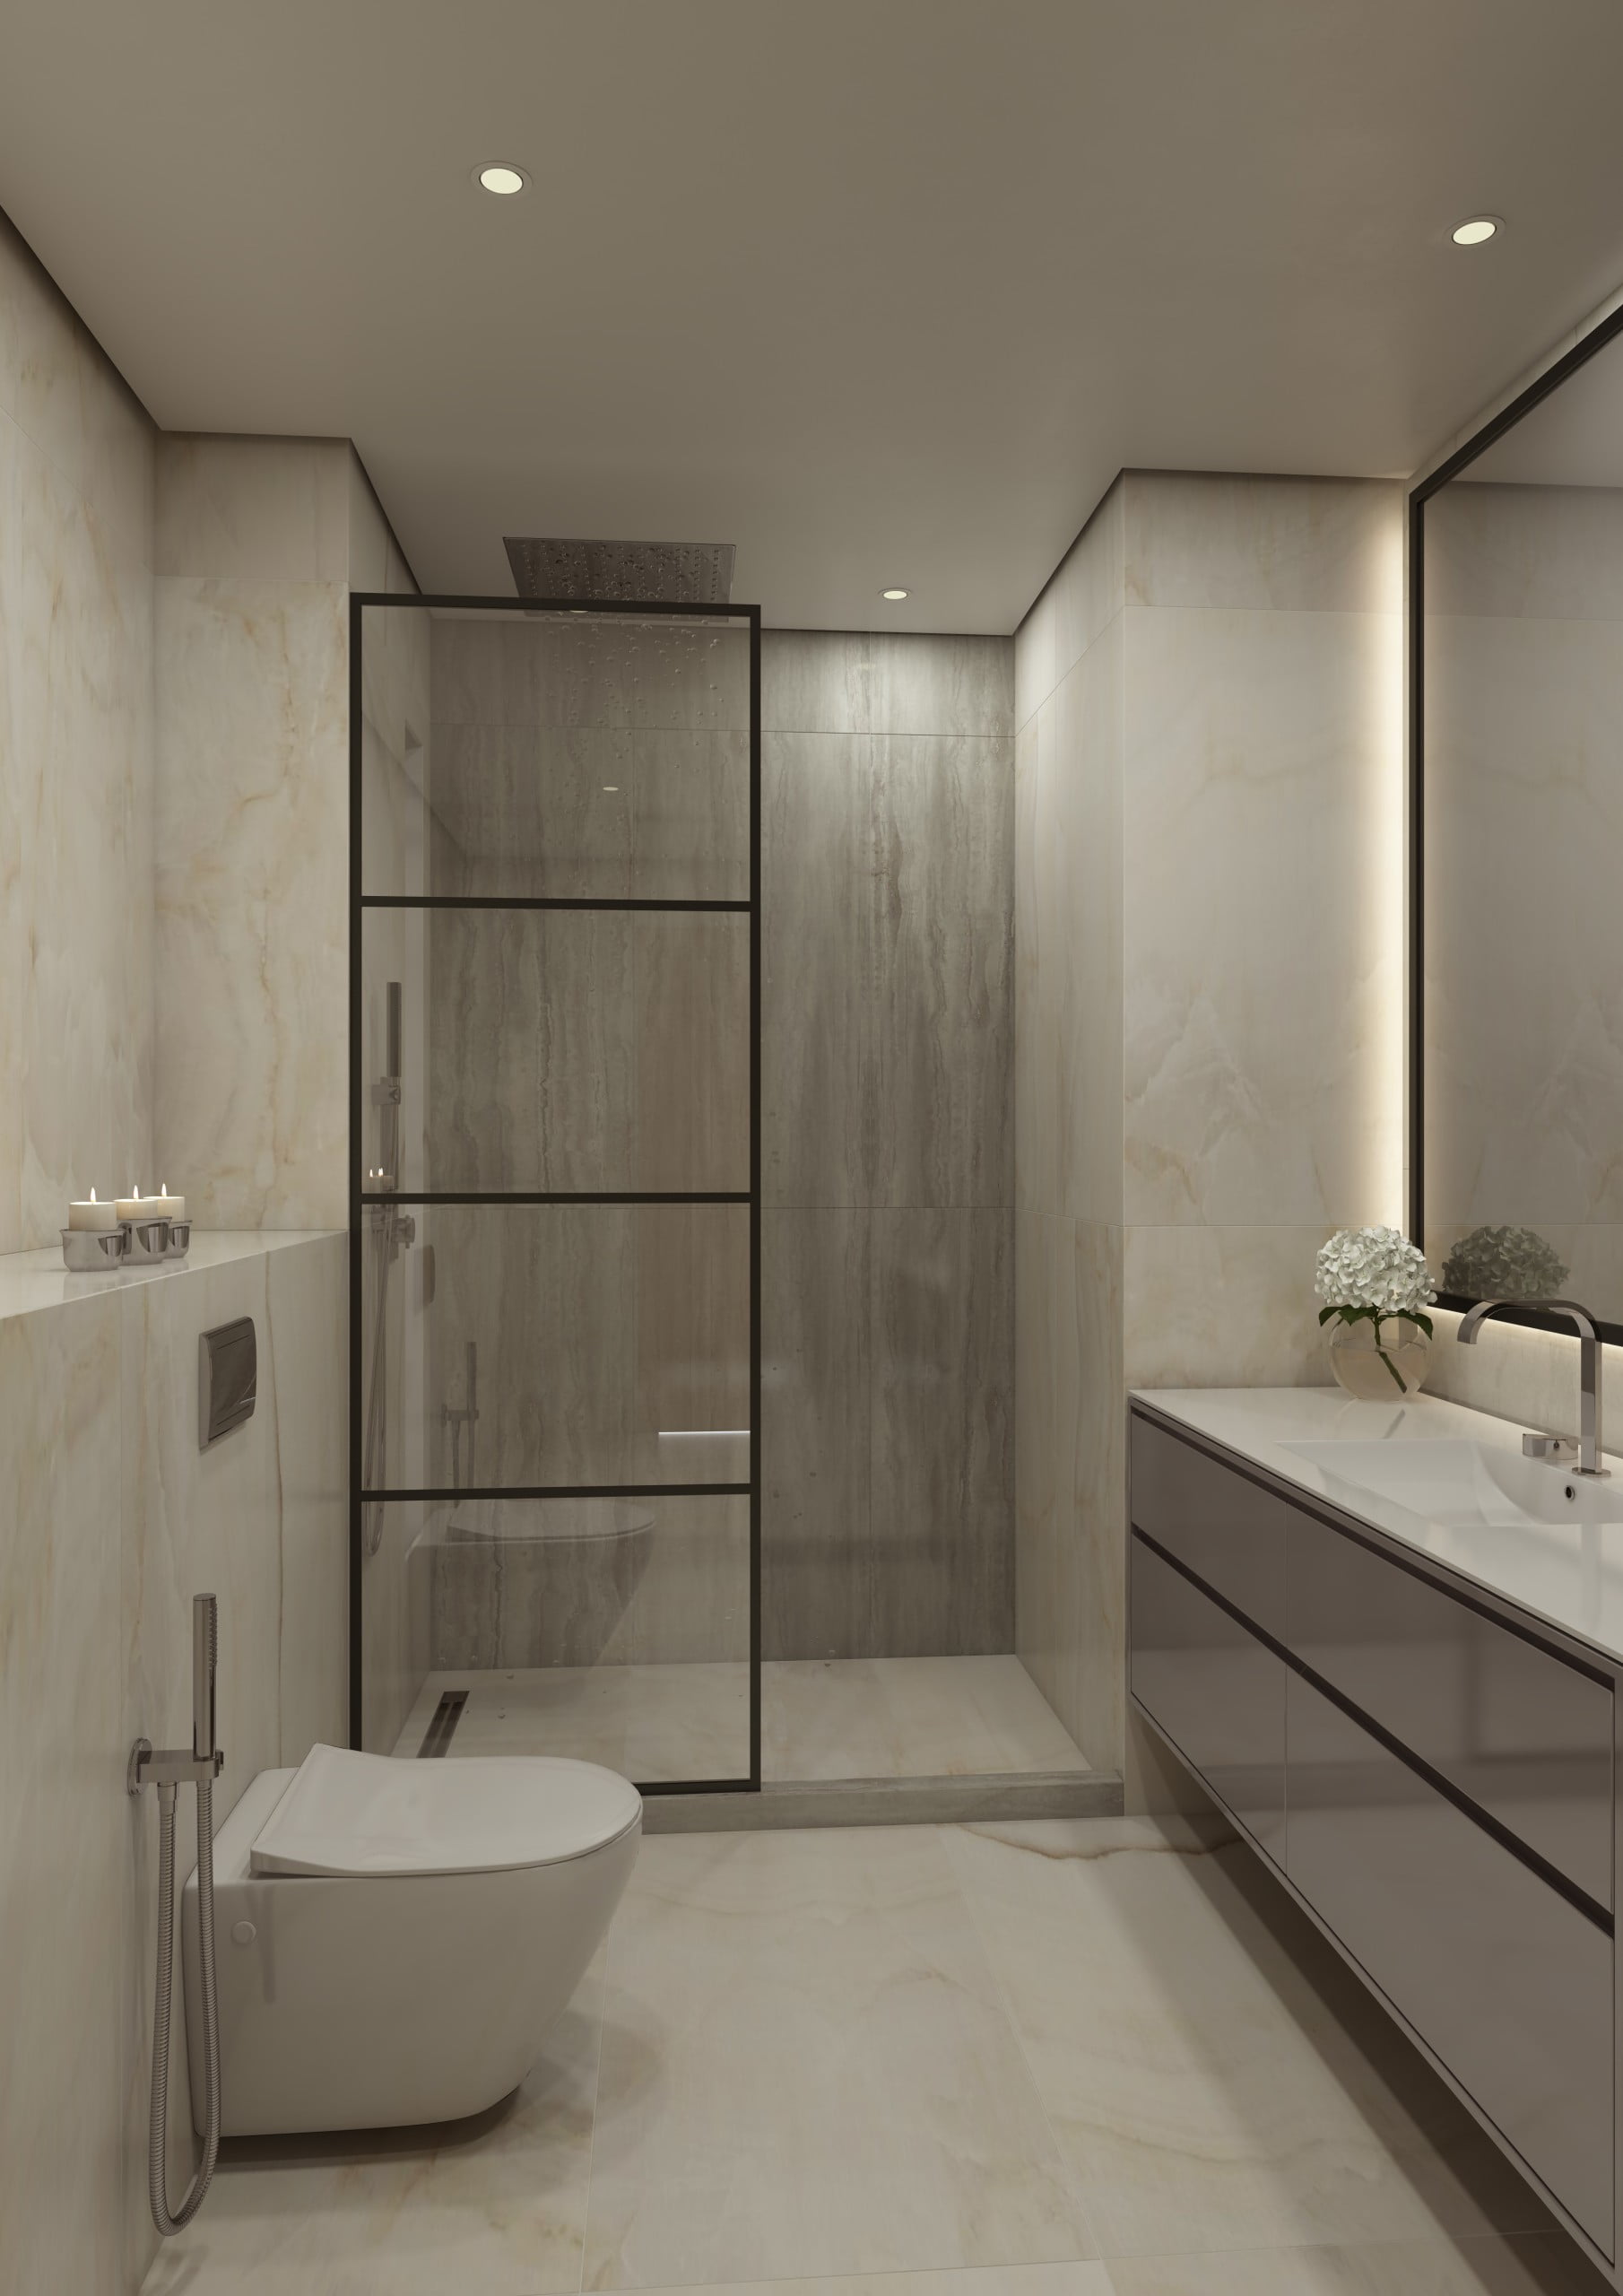 Bathroom final scaled - Immobilier Dubai